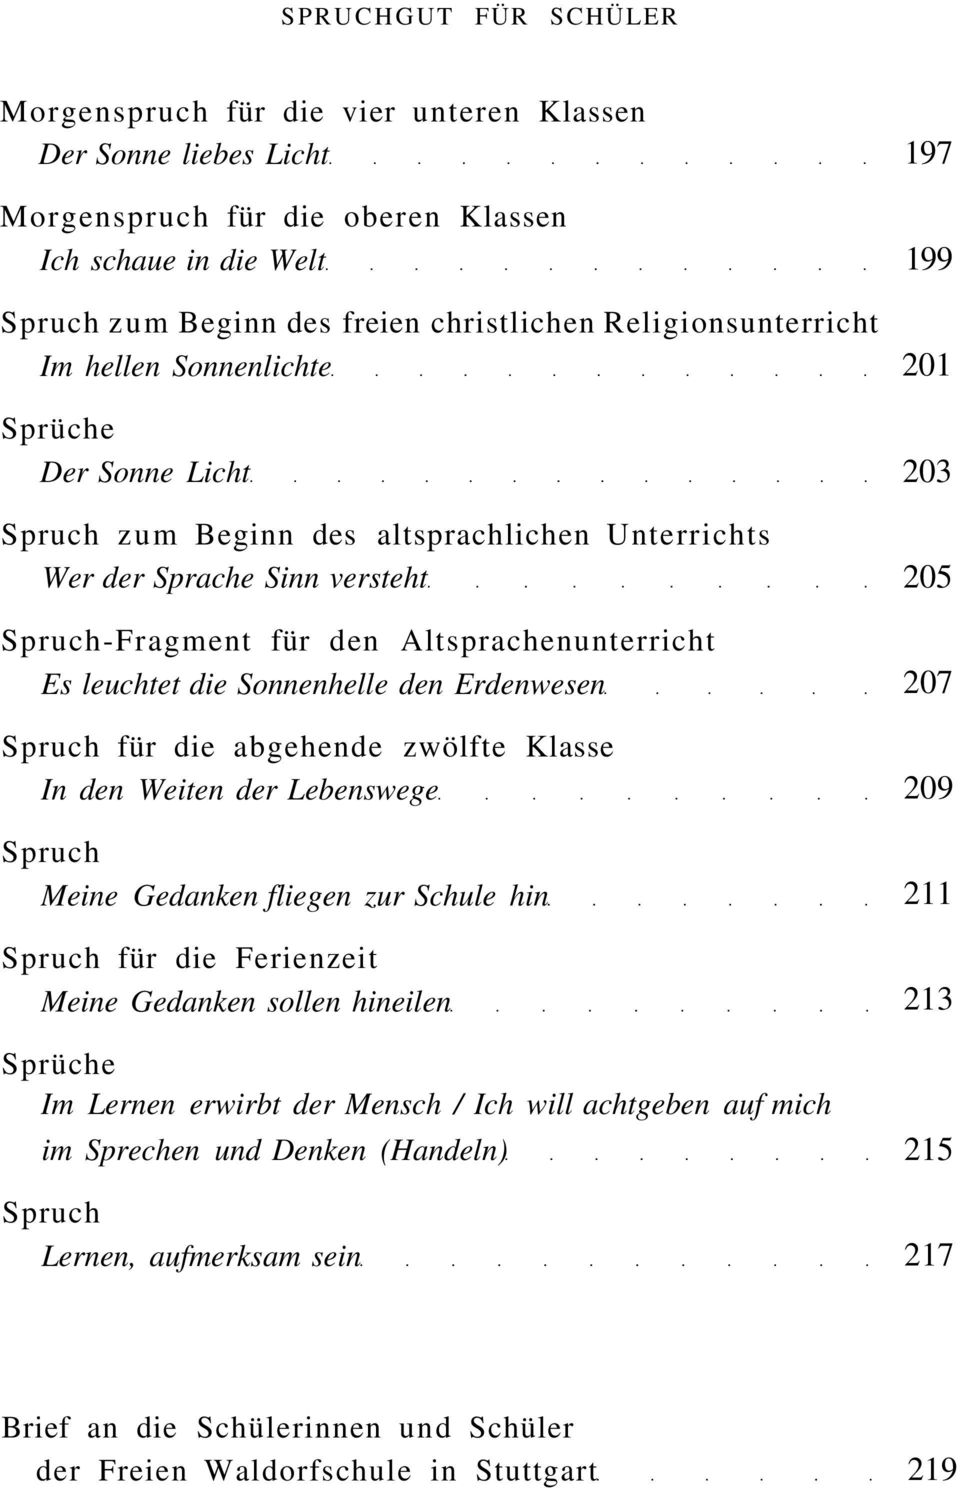 Rudolf Steiner Gesamtausgabe Veroffentlichungen Zur Geschichte Und Aus Den Inhalten Der Esoterischen Lehrtatigkeit Pdf Kostenfreier Download